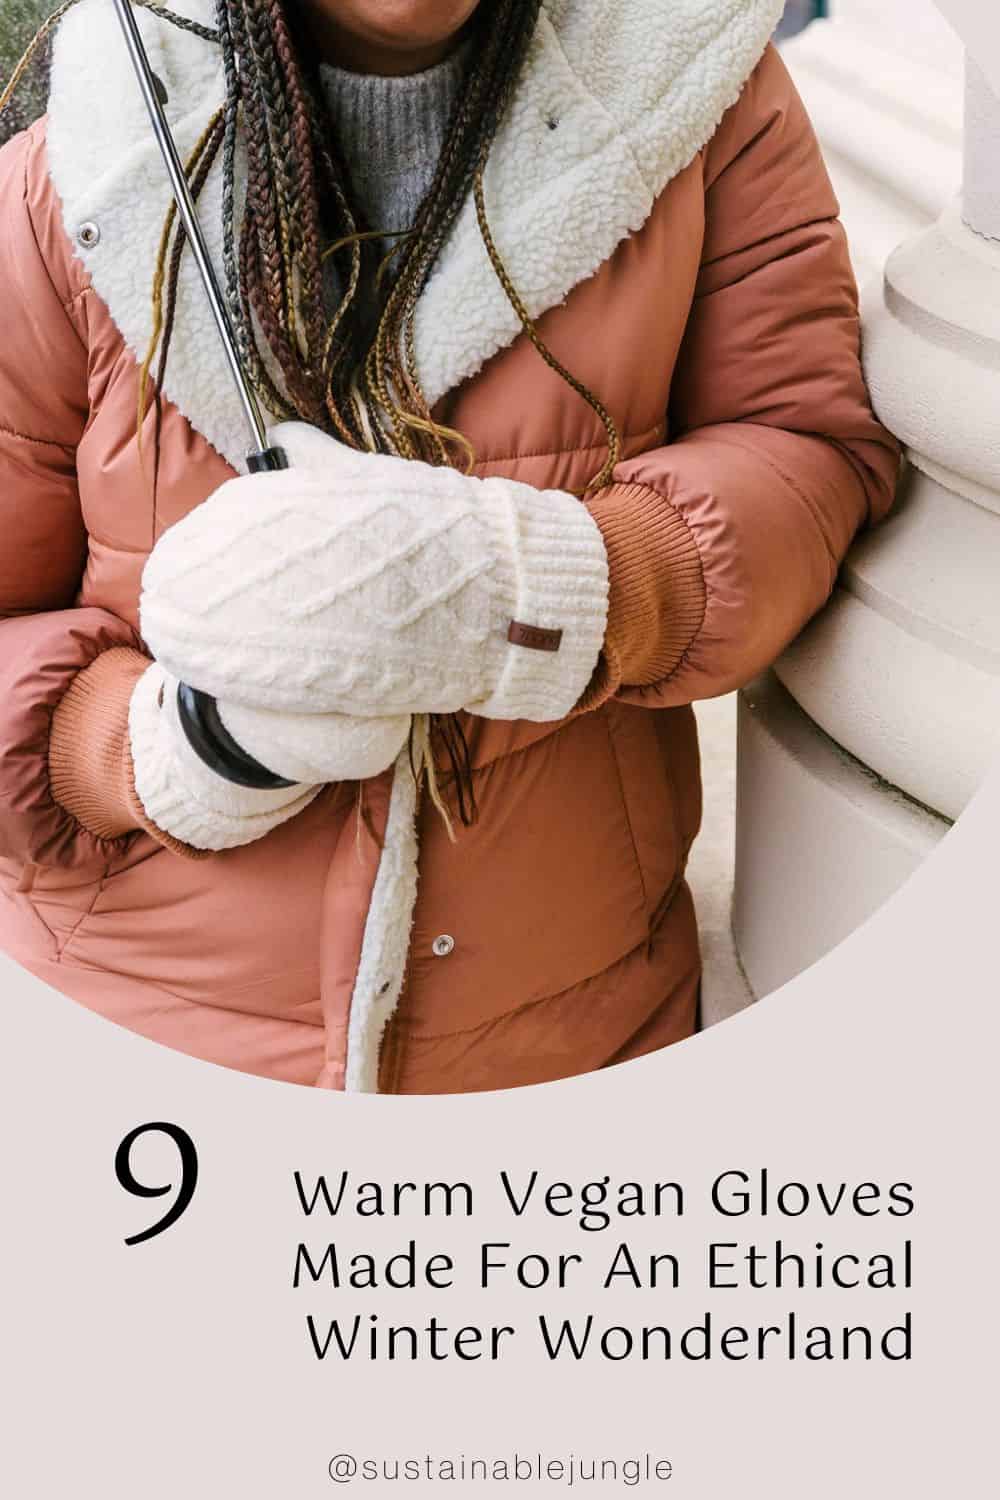 9 Warm Vegan Gloves Made For An Ethical Winter Wonderland Image by Pudus™ #vegangloves #veganwitnergloves #vegandrivingglvoes #warmvegangloves #veganmittens #bestvegangloves #sustainablejungle